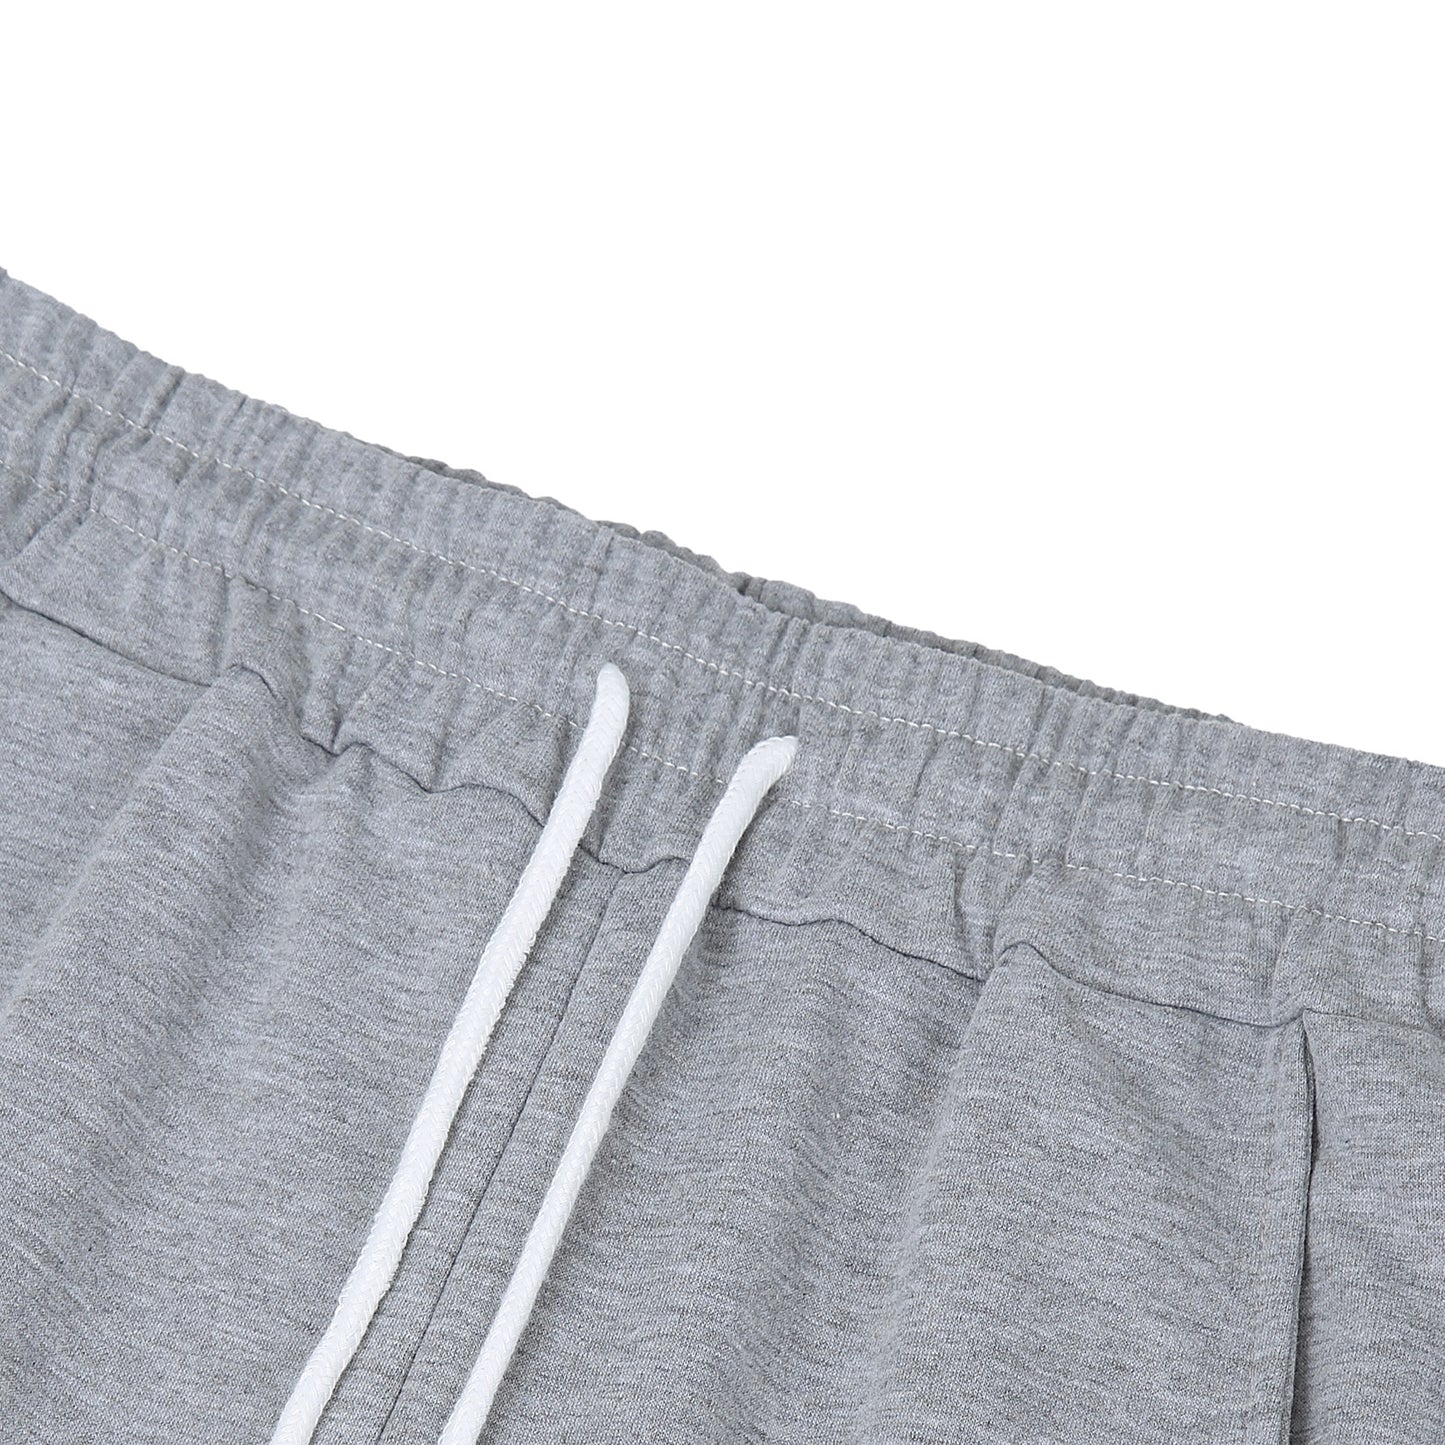 YESFASHION Women's Drawstring Exercise Pants Grey